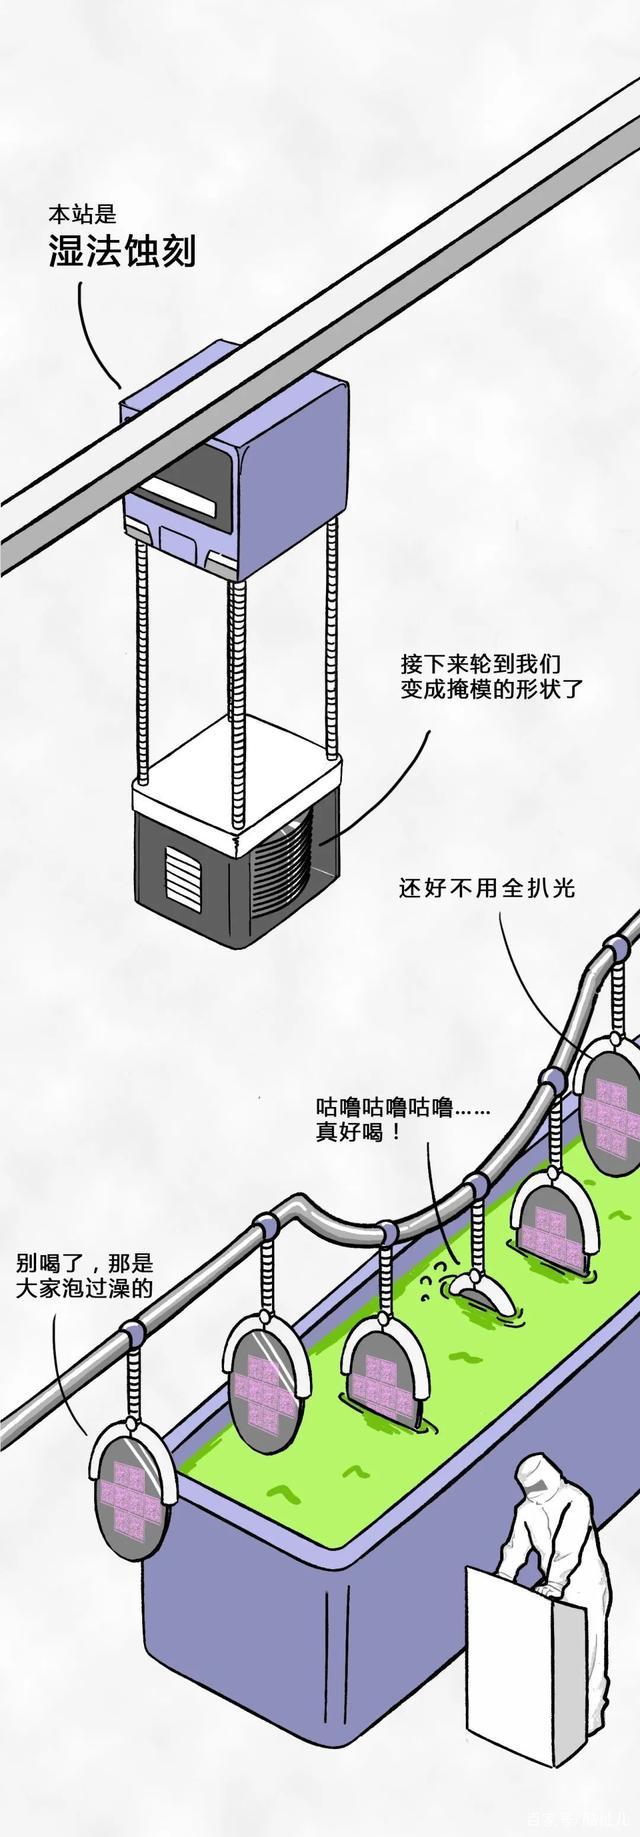 国内芯片技术交流-一粒沙子变成芯片的全过程risc-v单片机中文社区(17)